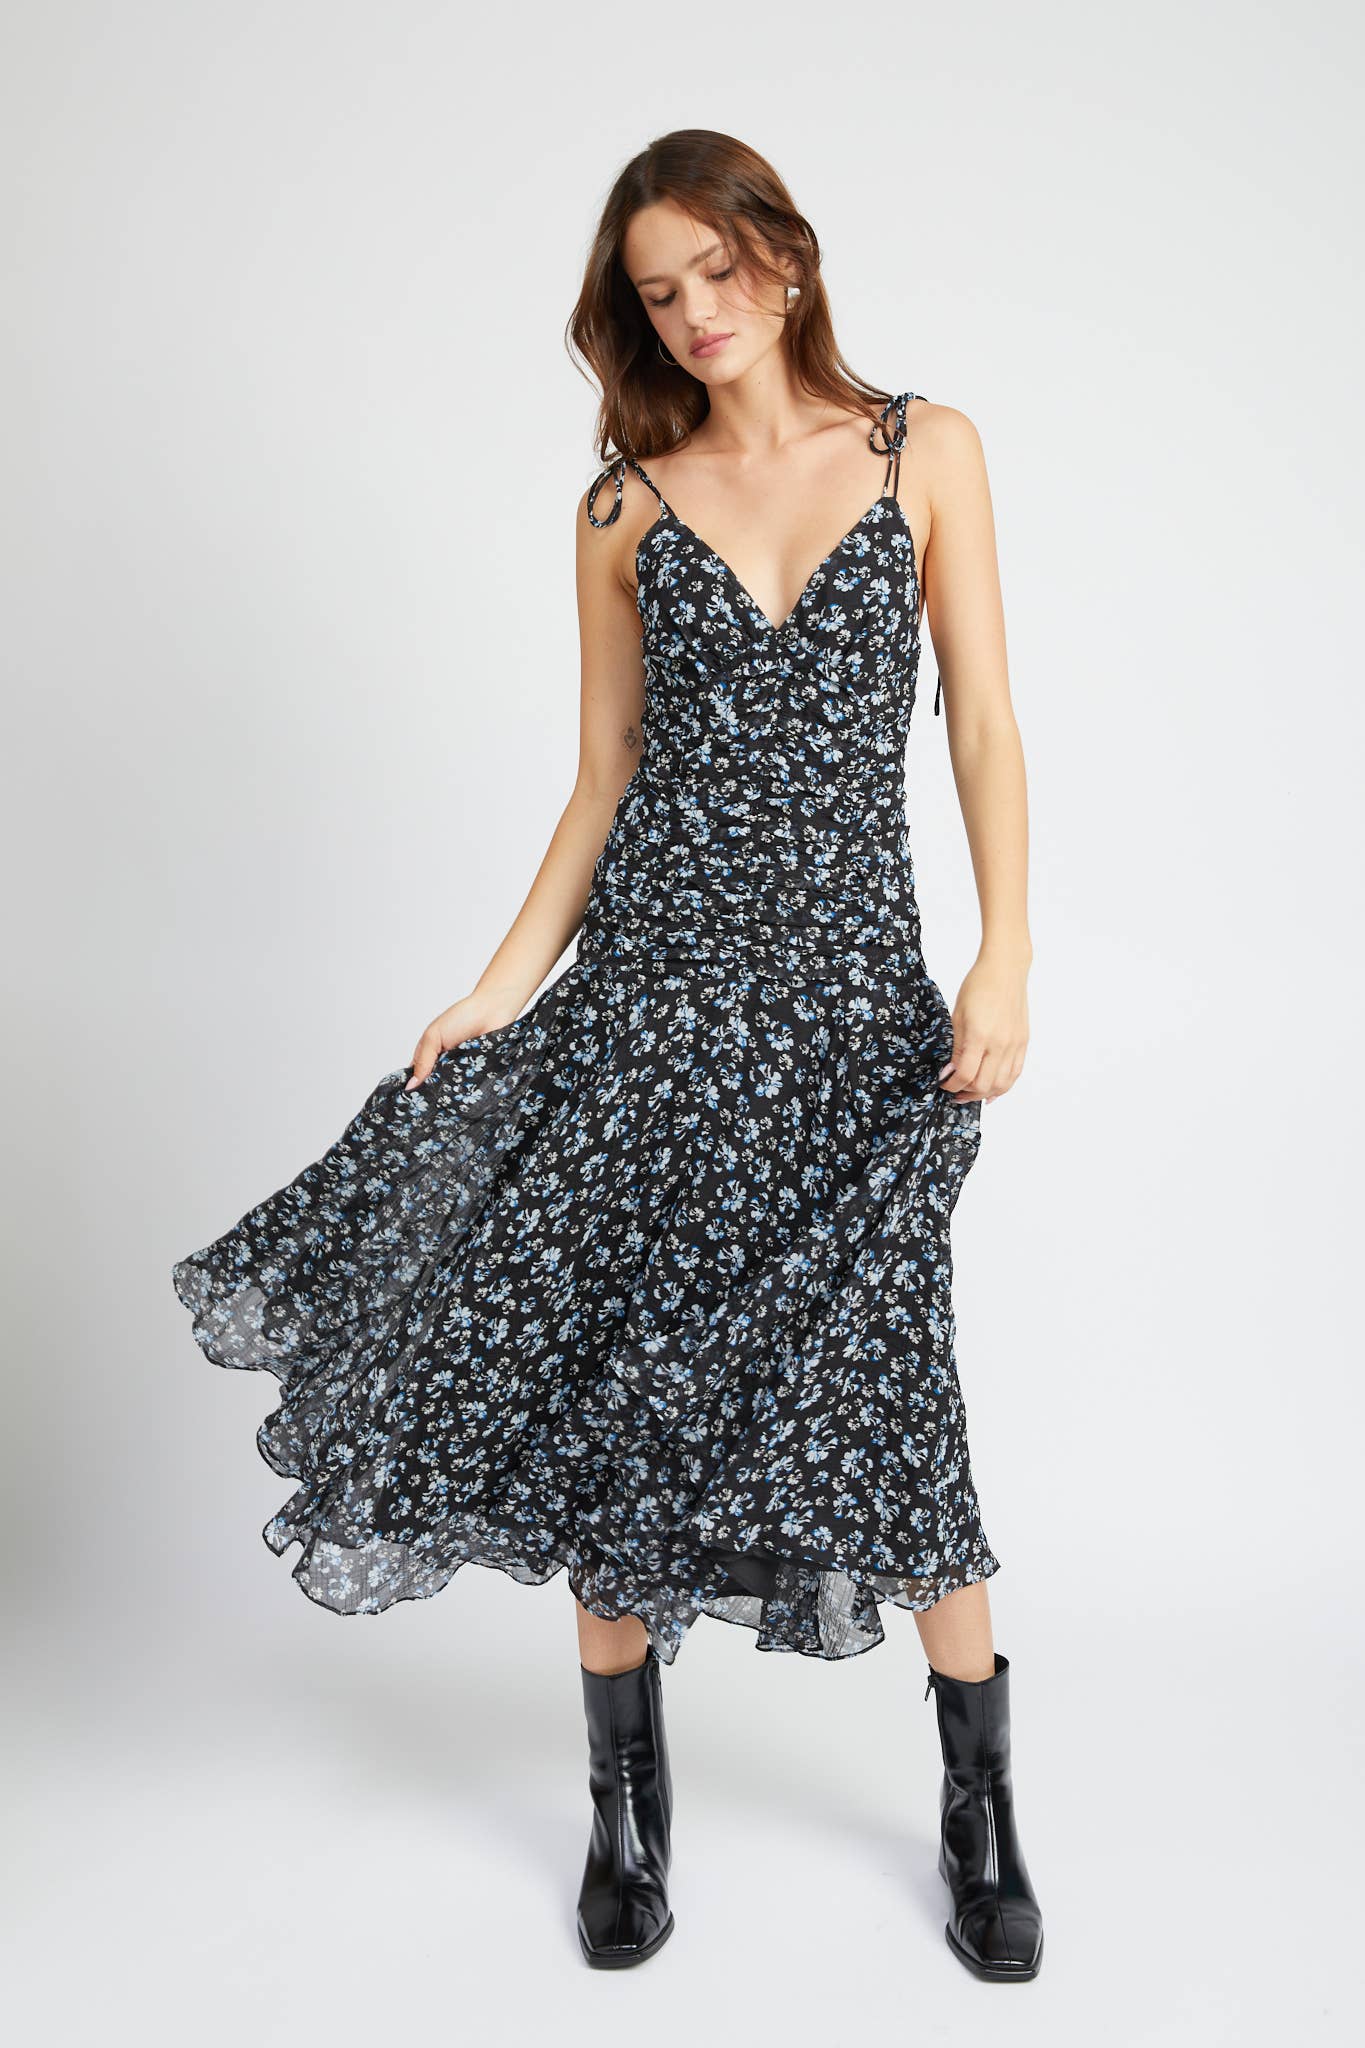 Ruched Black Floral Dress